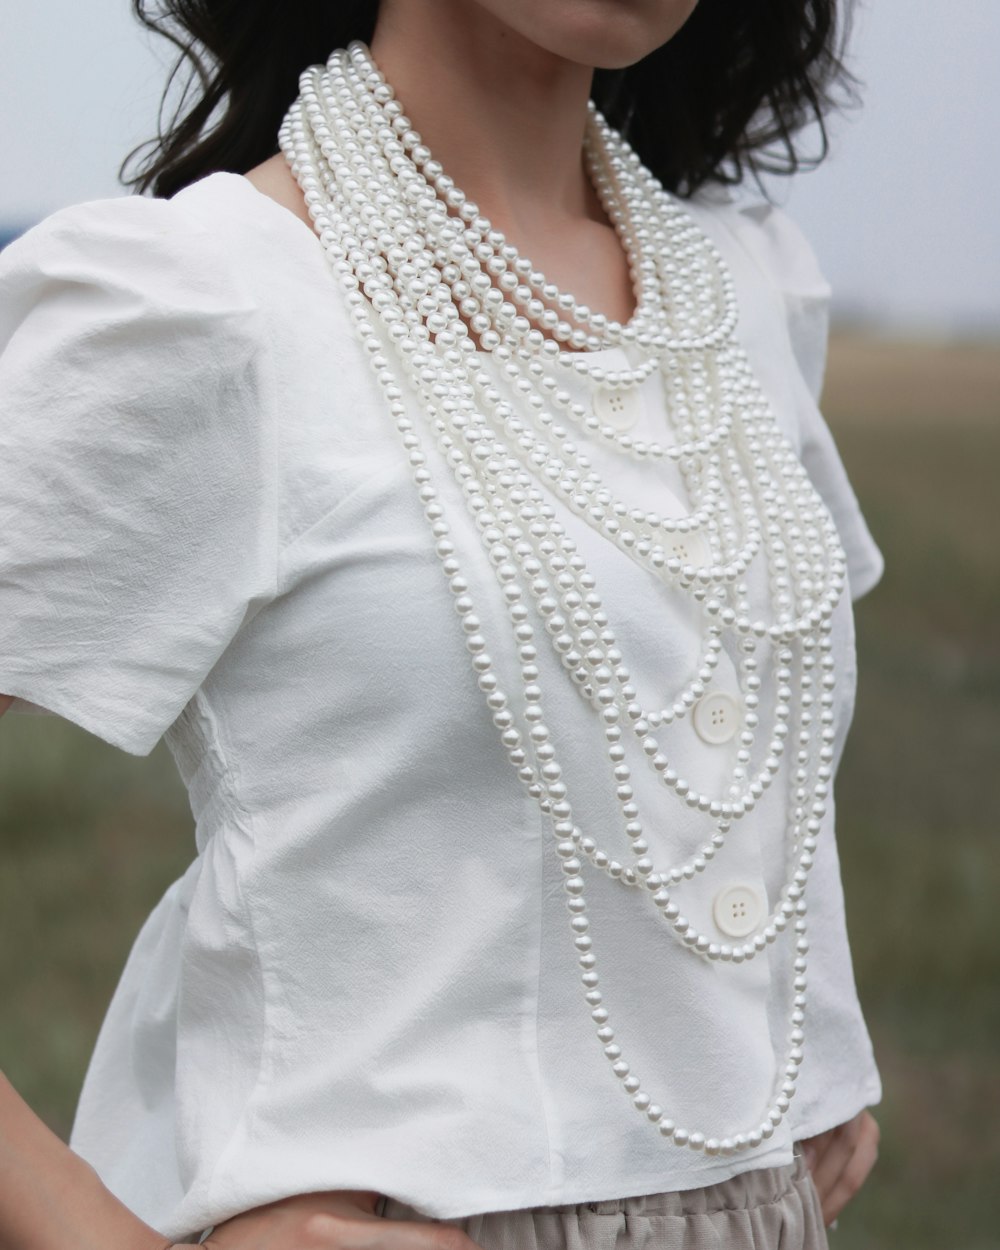 donna che indossa camicetta bianca e collana di perle bianche